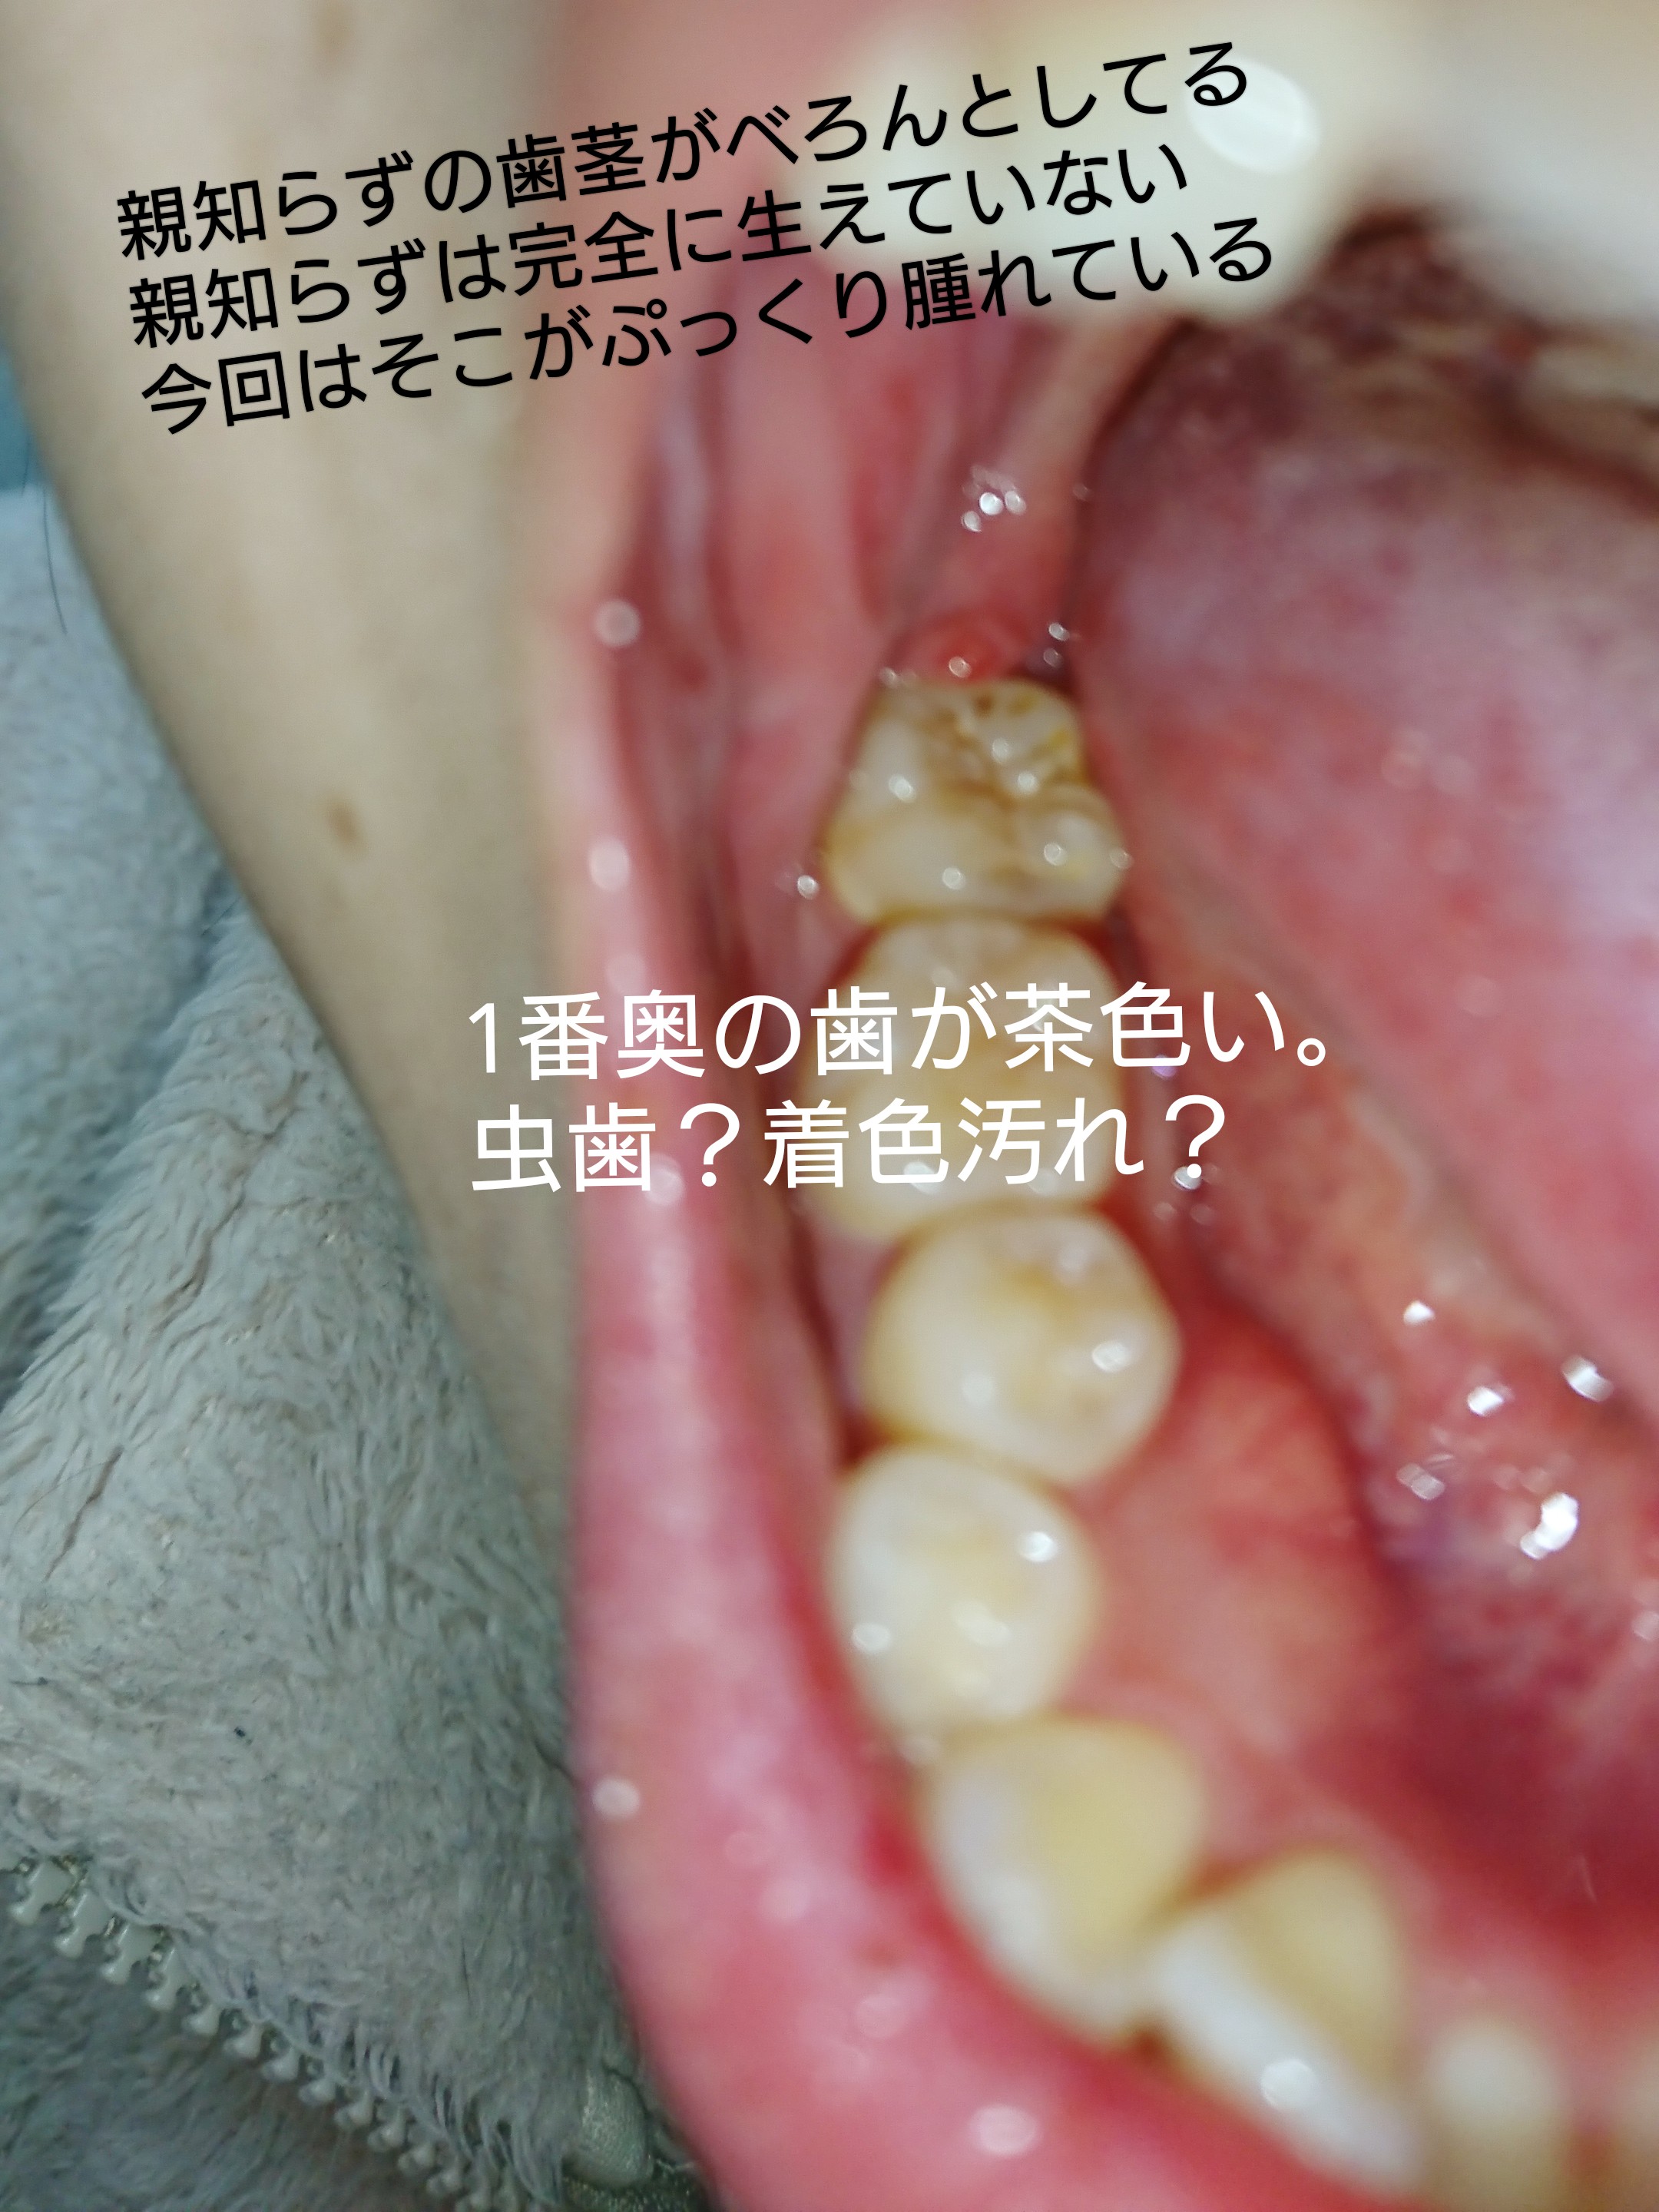 が 腫れる 奥 の 歯茎